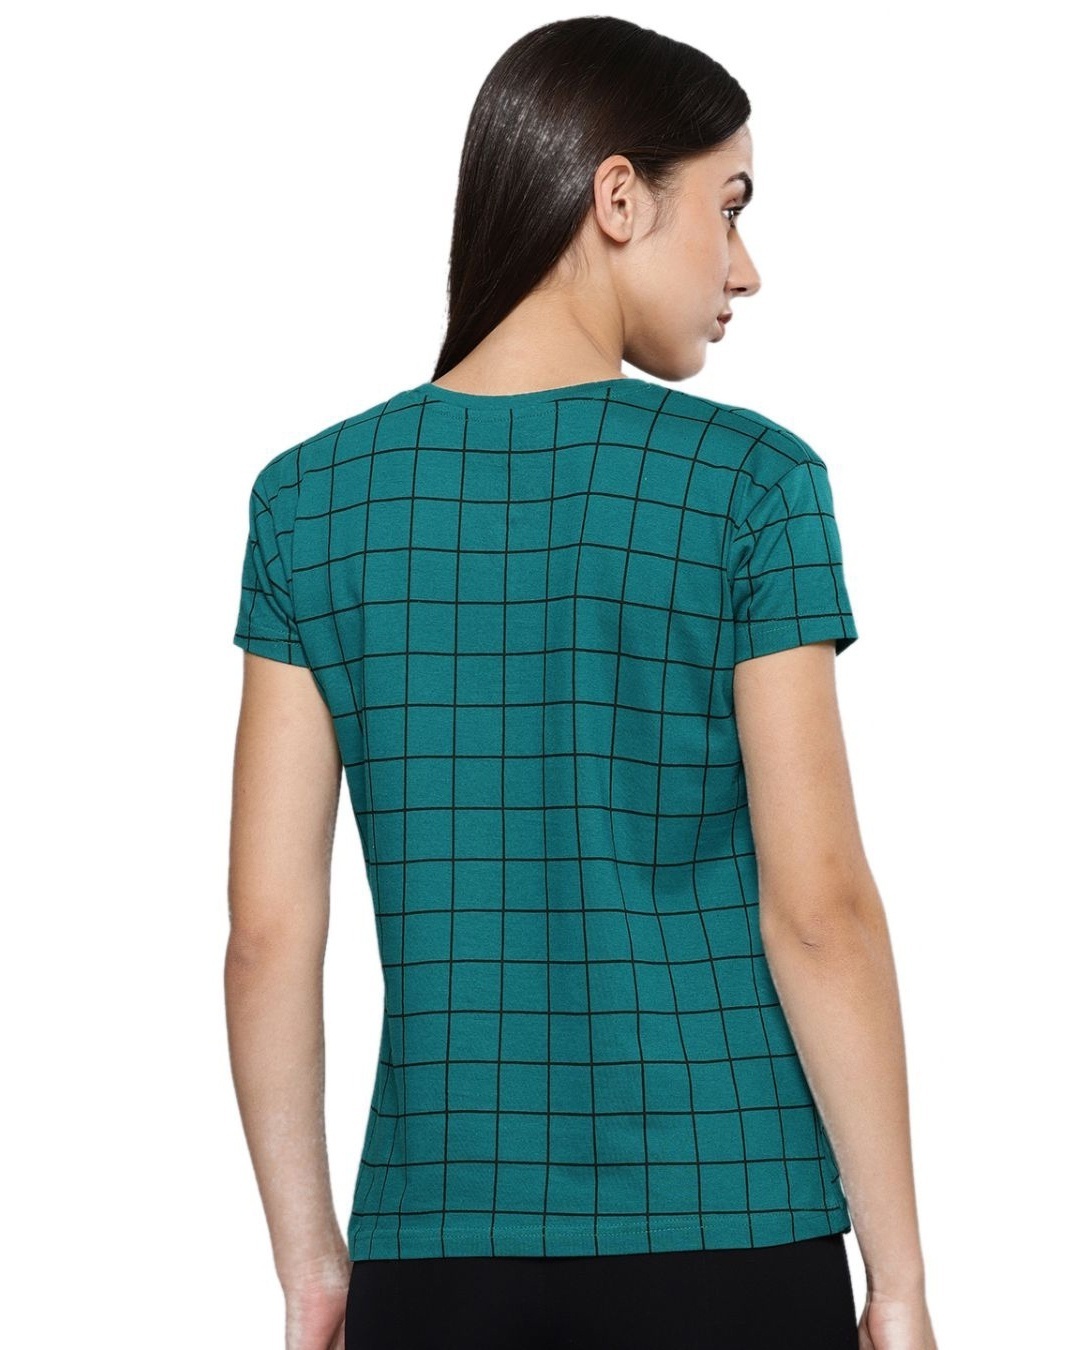 Shop Women's Green Checkered T-shirt-Back